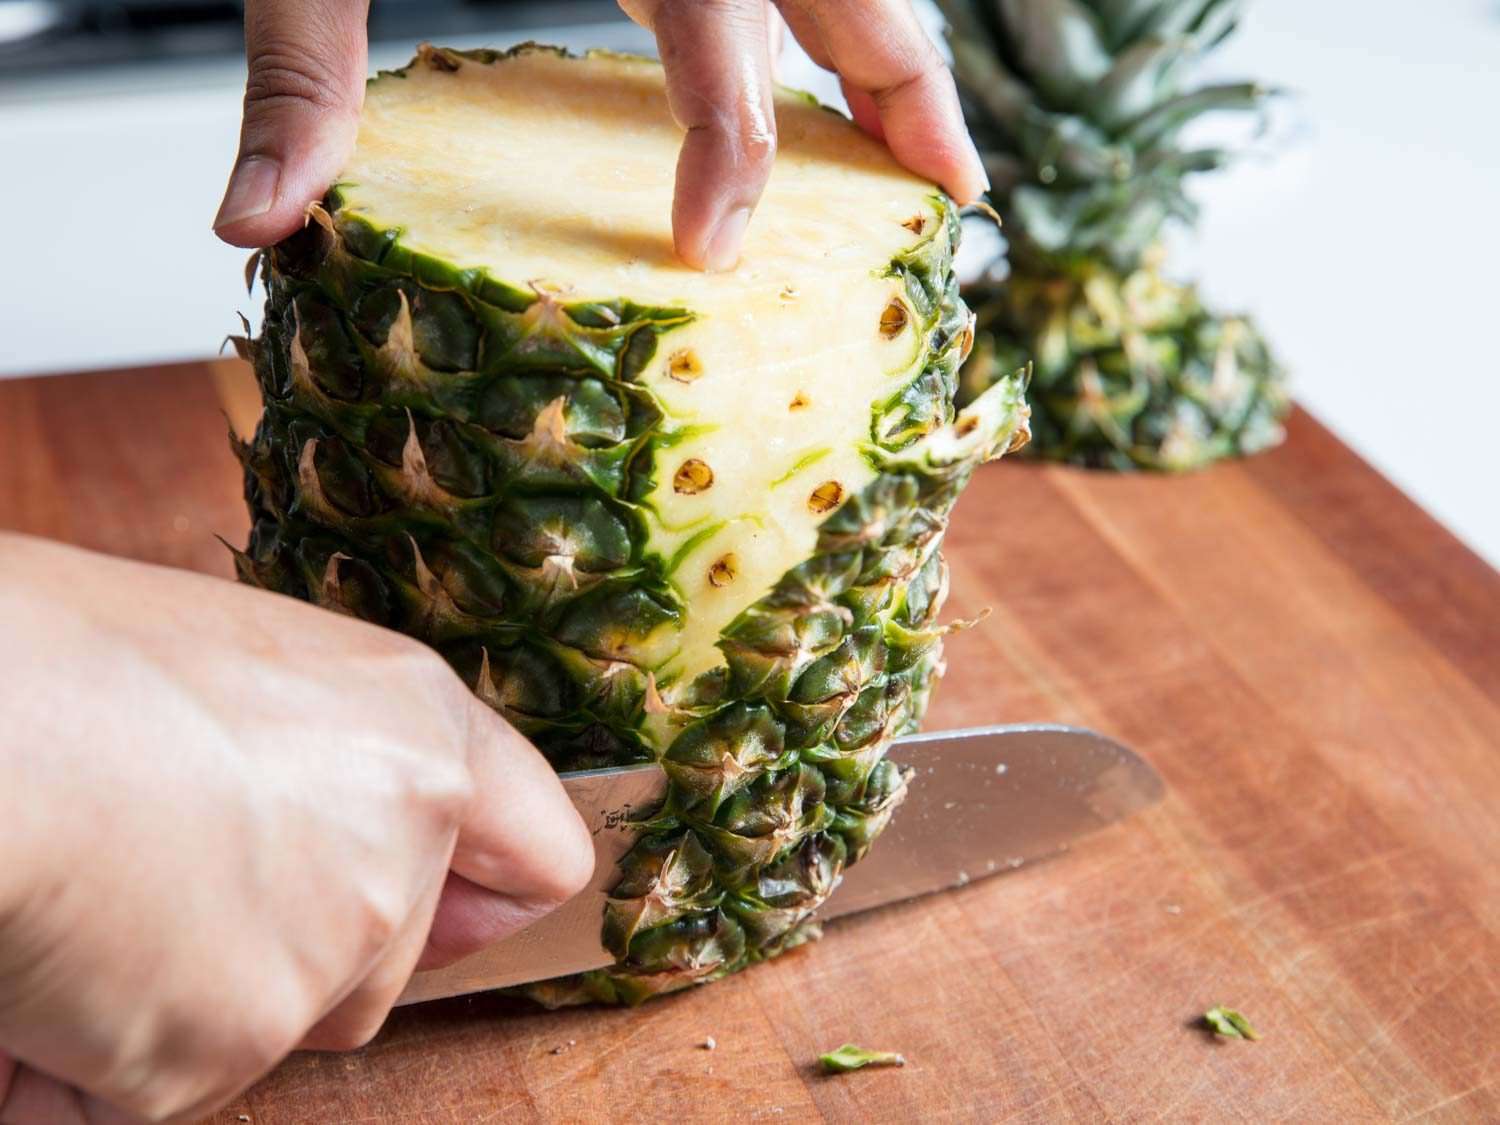 切菠萝边的刀。